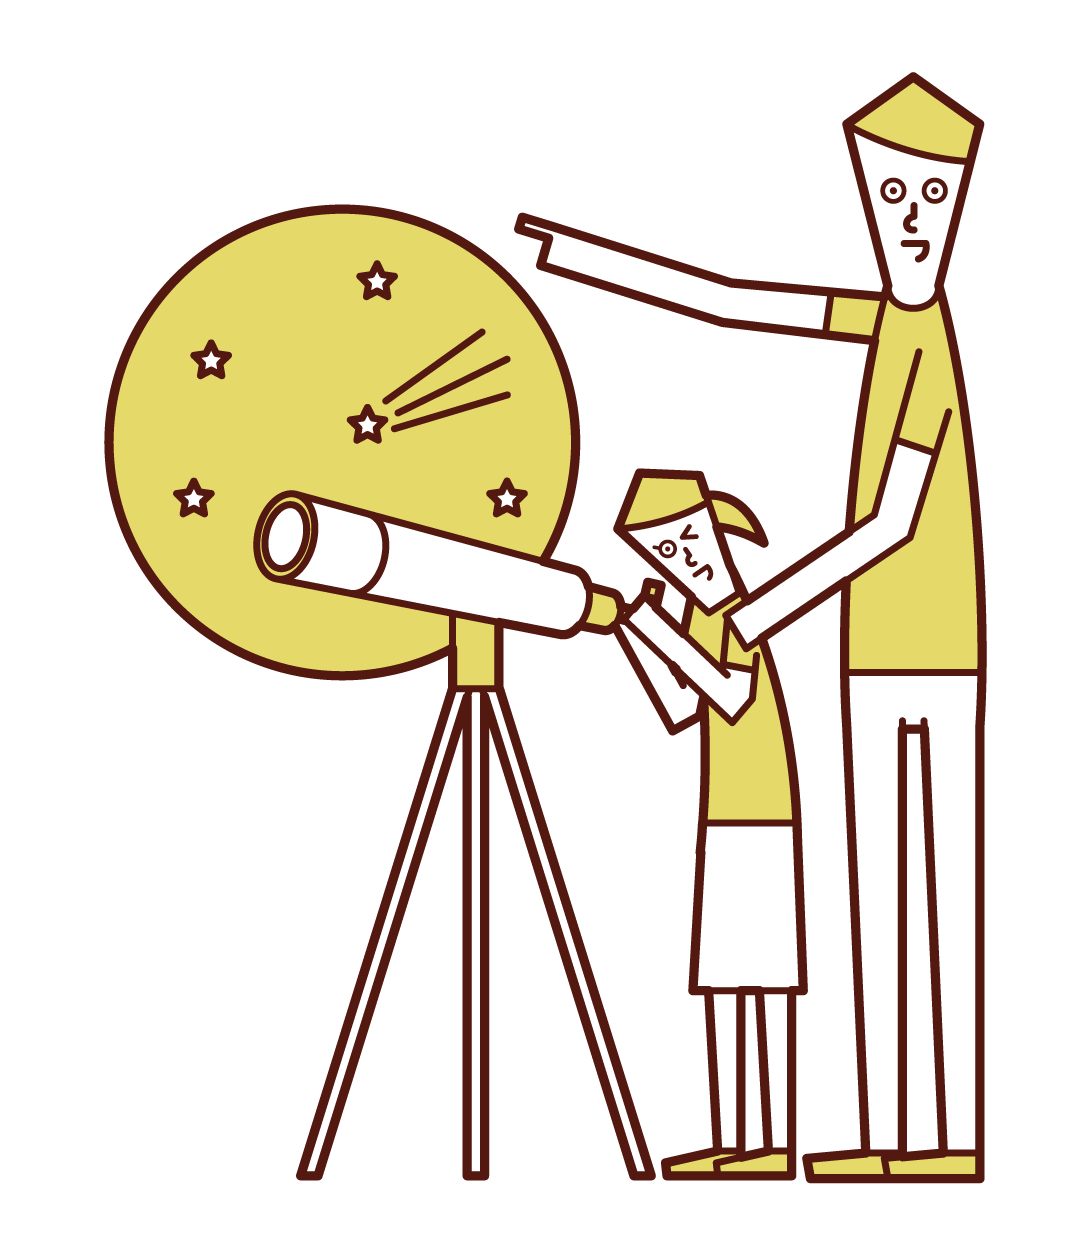 望遠鏡で星空を観察する親子のイラスト